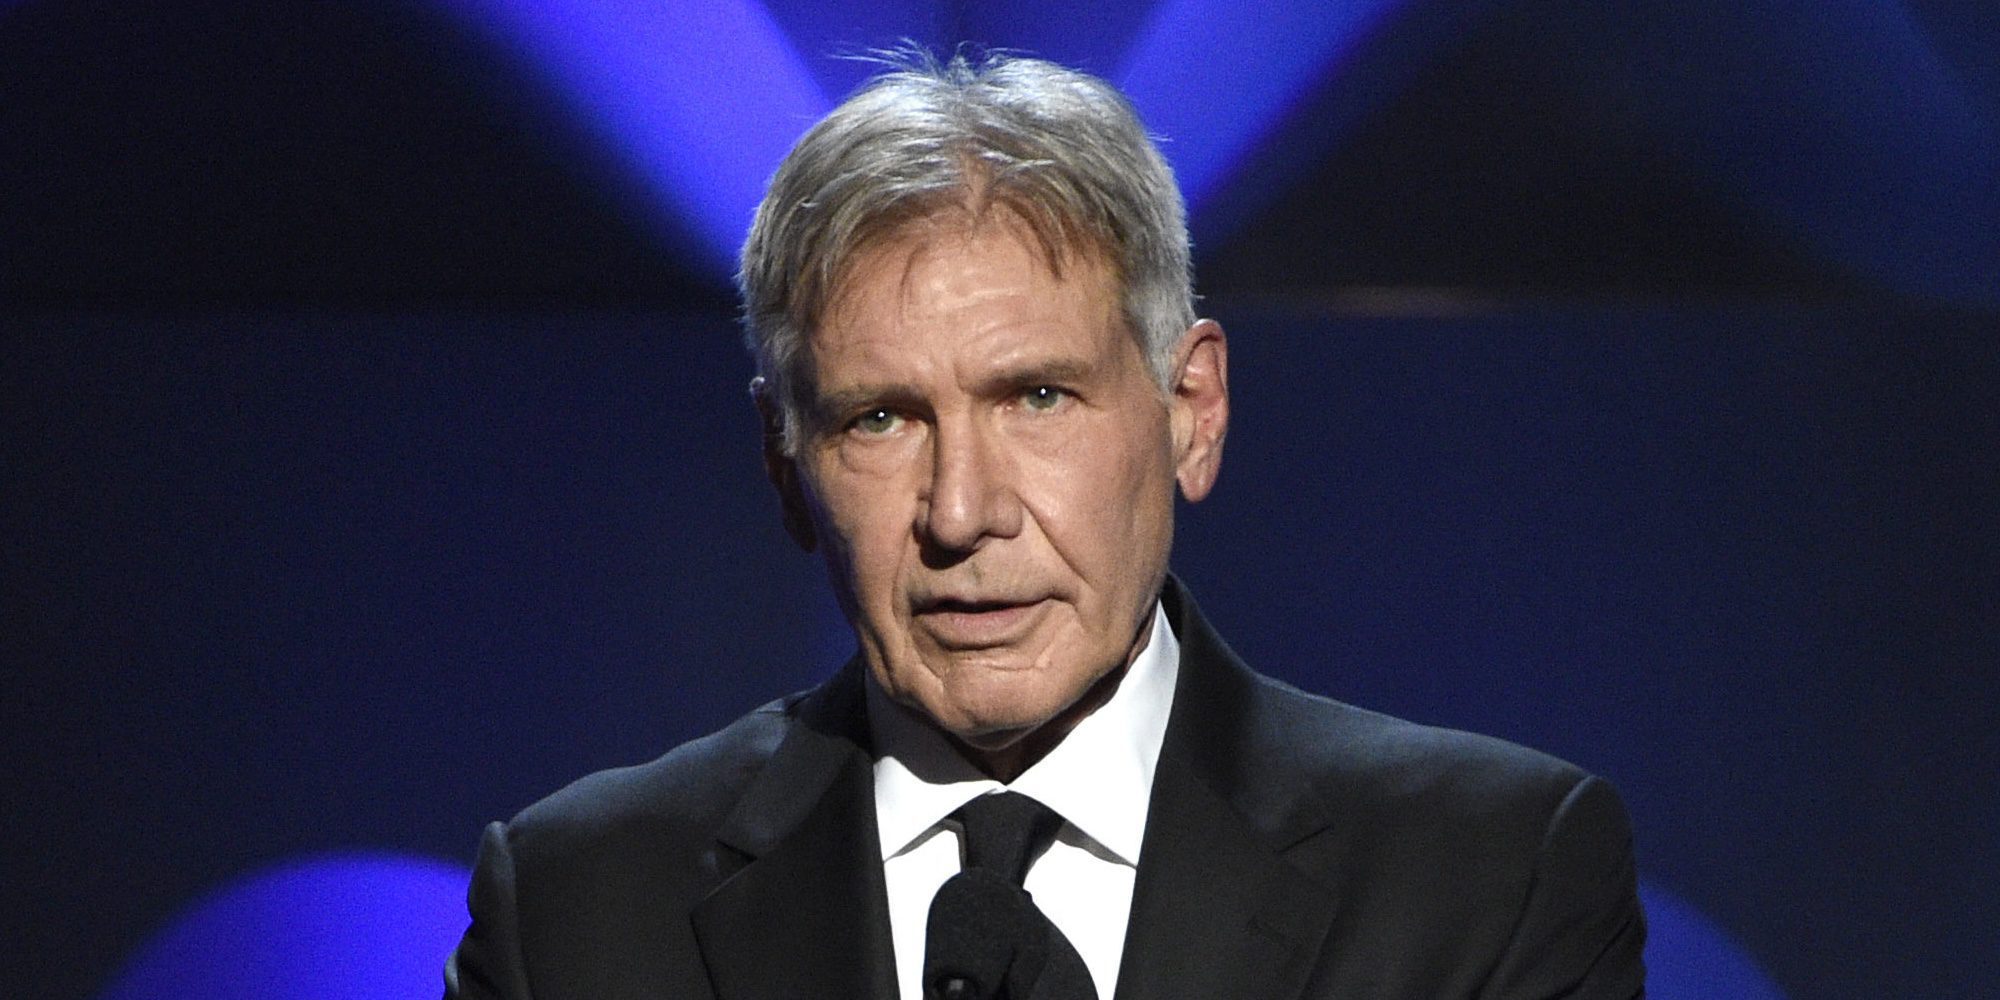 Harrison Ford, héroe en la vida real tras el rescate a una mujer